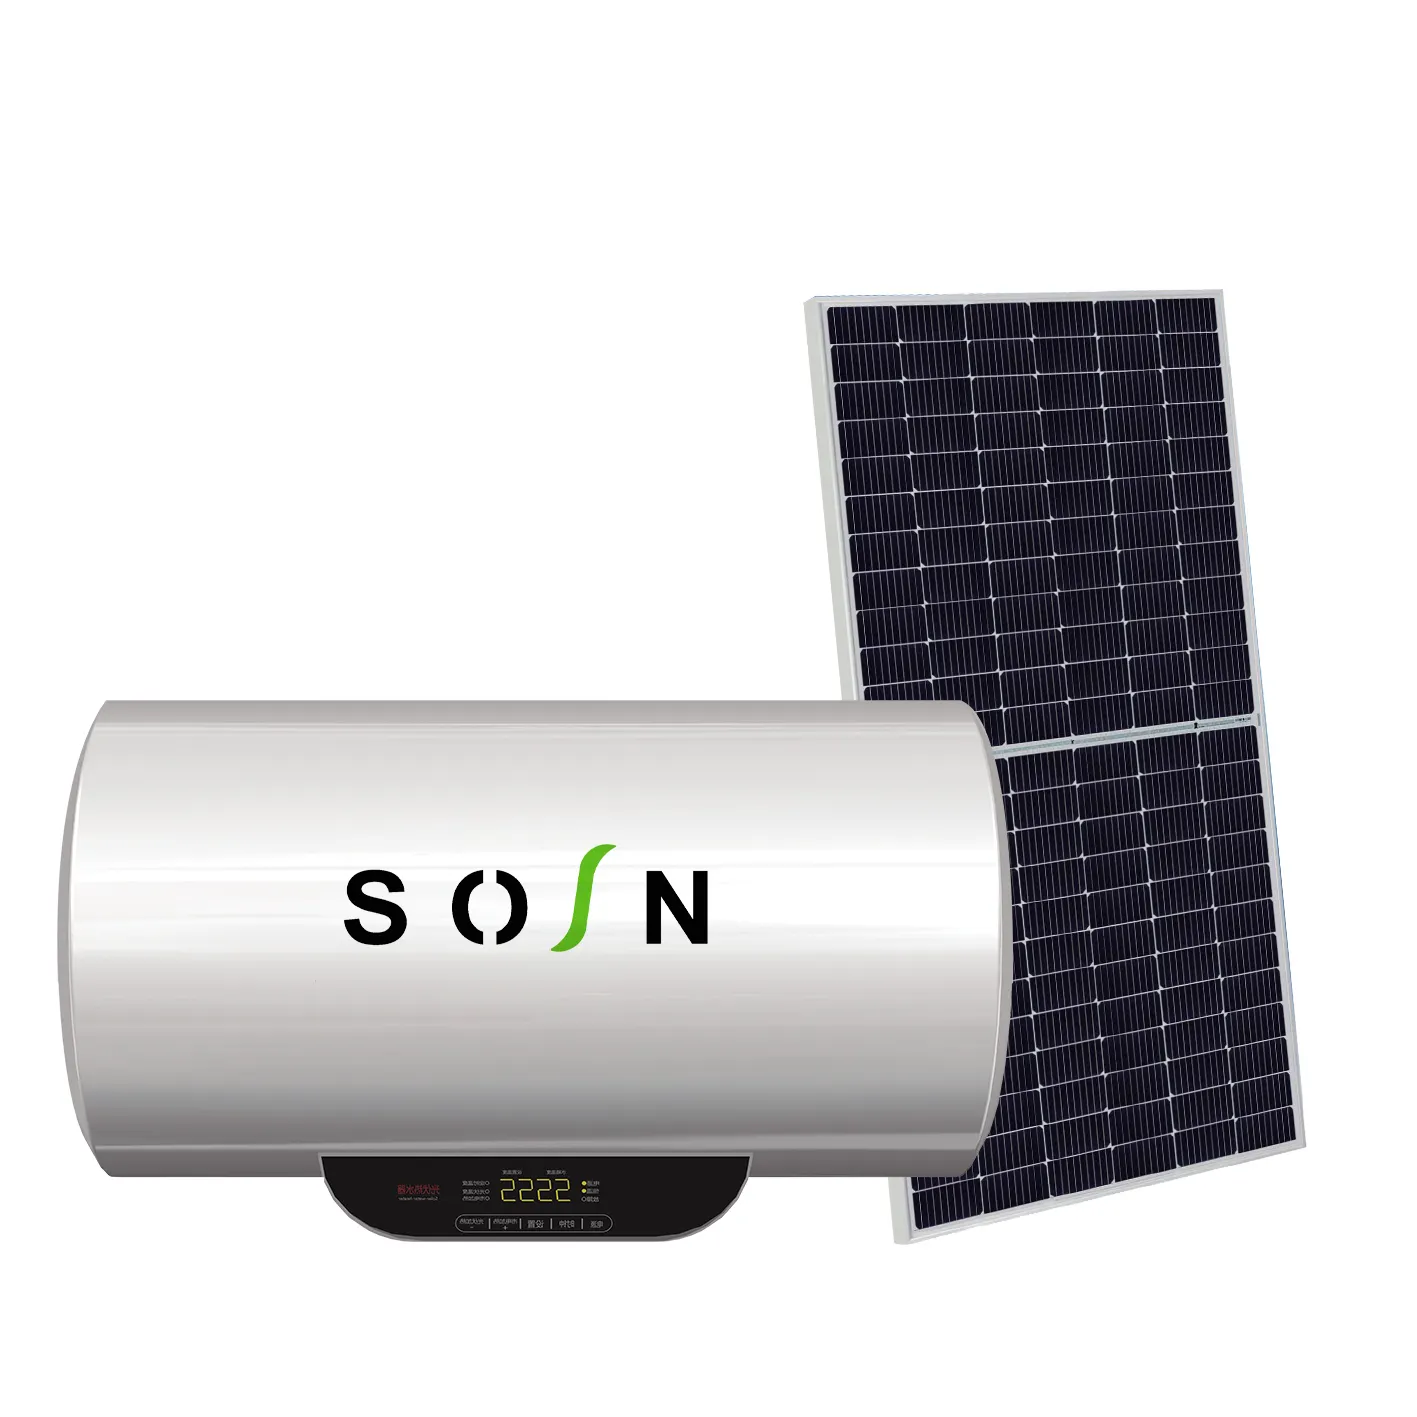 Profession elle Herstellung Kompakter Solarenergie-Warmwasser bereiter Neues Design Solar warmwasser bereiter Photovoltaik-Warmwasser bereiter